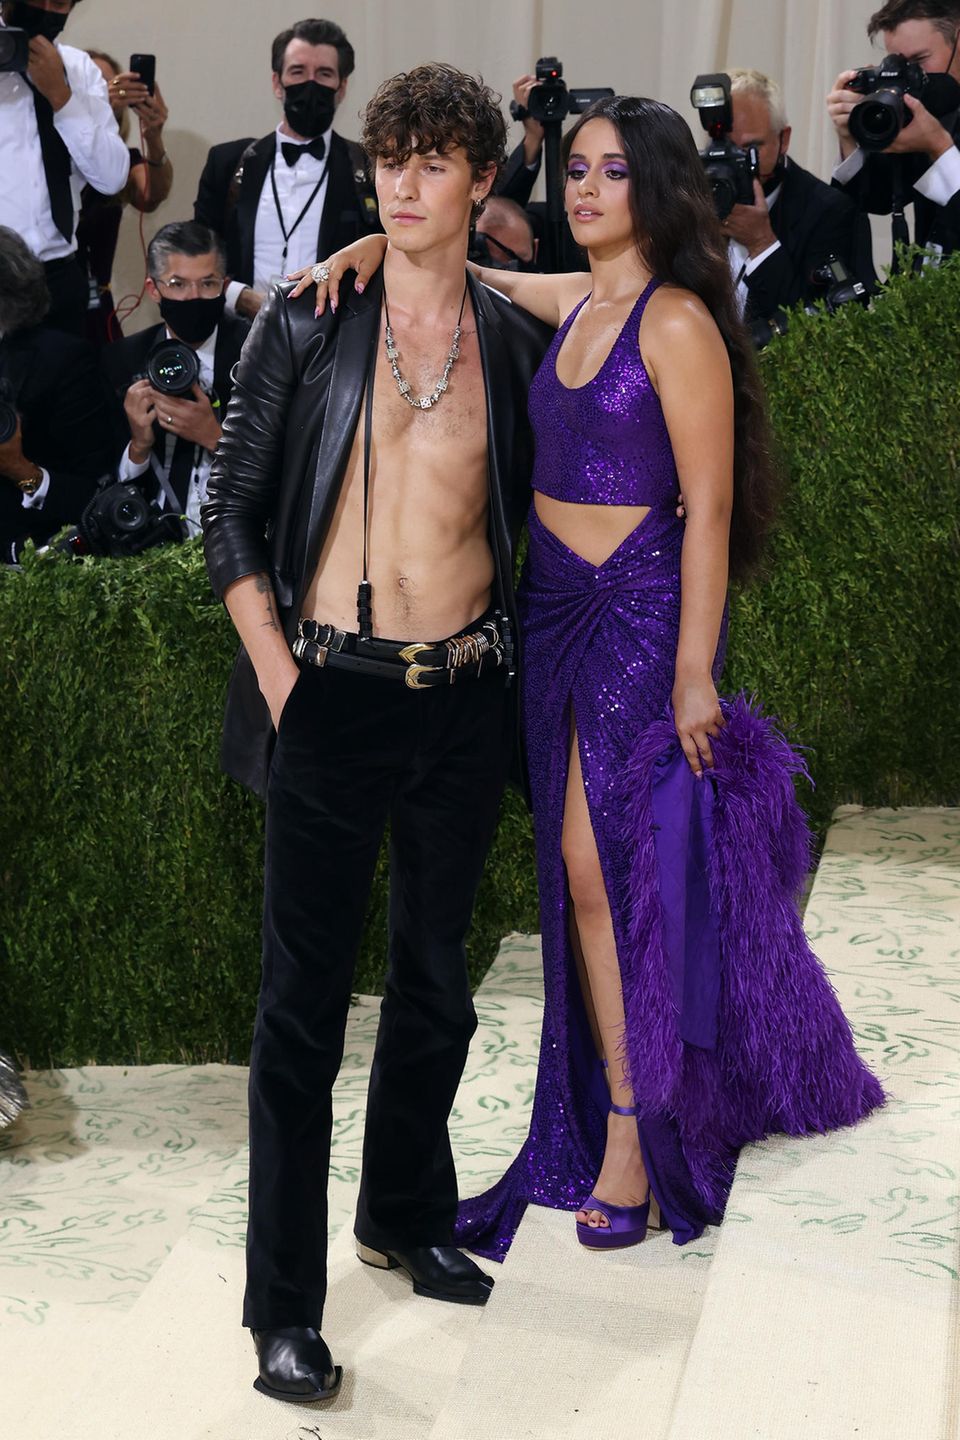 Turteltauben Shawn Mendes und Camila Cabello erscheinen in Looks von Michael Kors. Camilla setzt auf ein lila Paillettenkleid, während Shawns Wahl auf eine schwarze Hose und ein Leder-Jackett fällt.